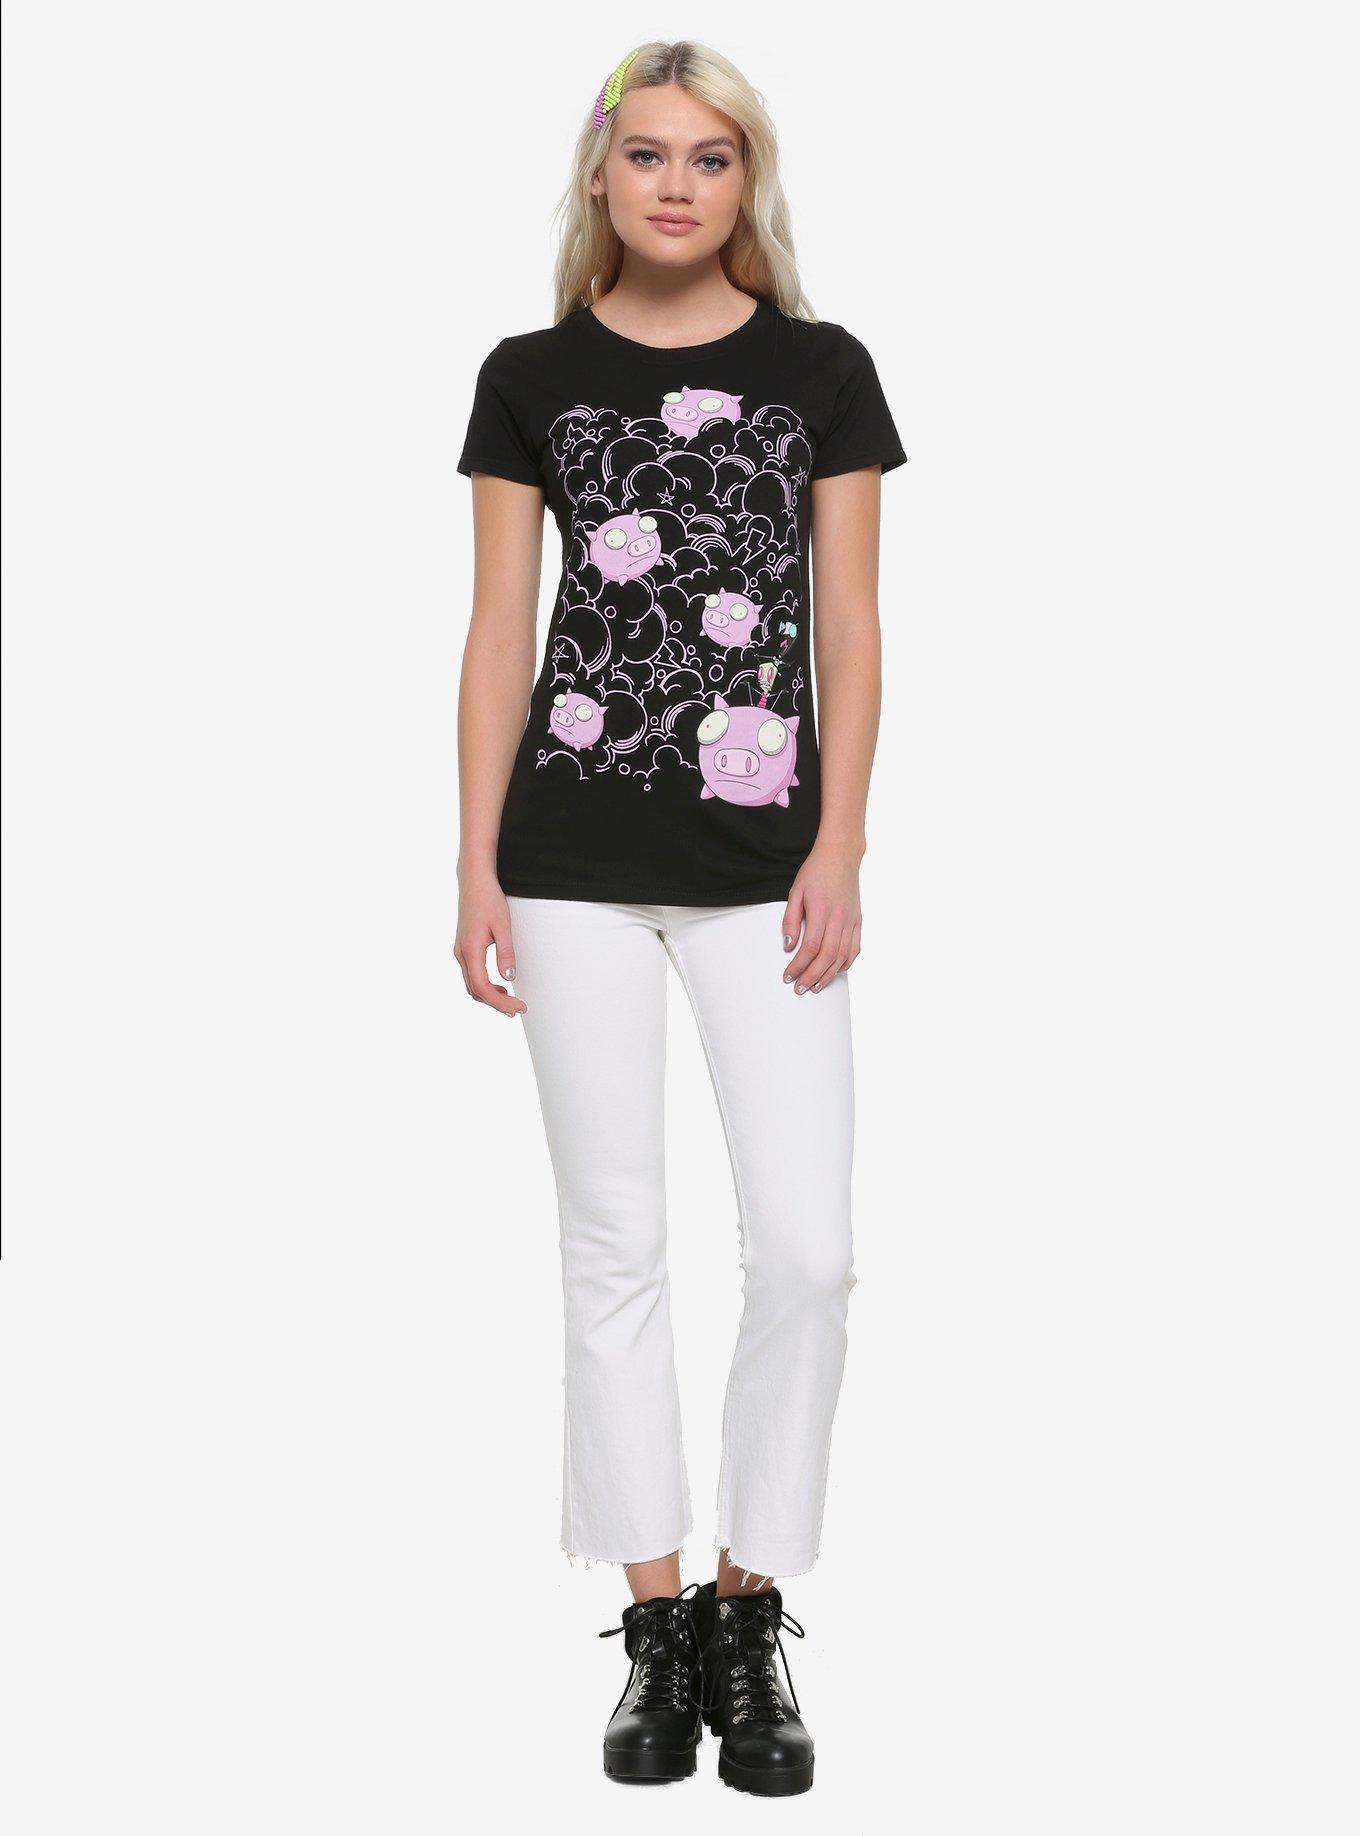 Invader Zim Gir & Pig Clouds Girls T-Shirt, PINK, alternate